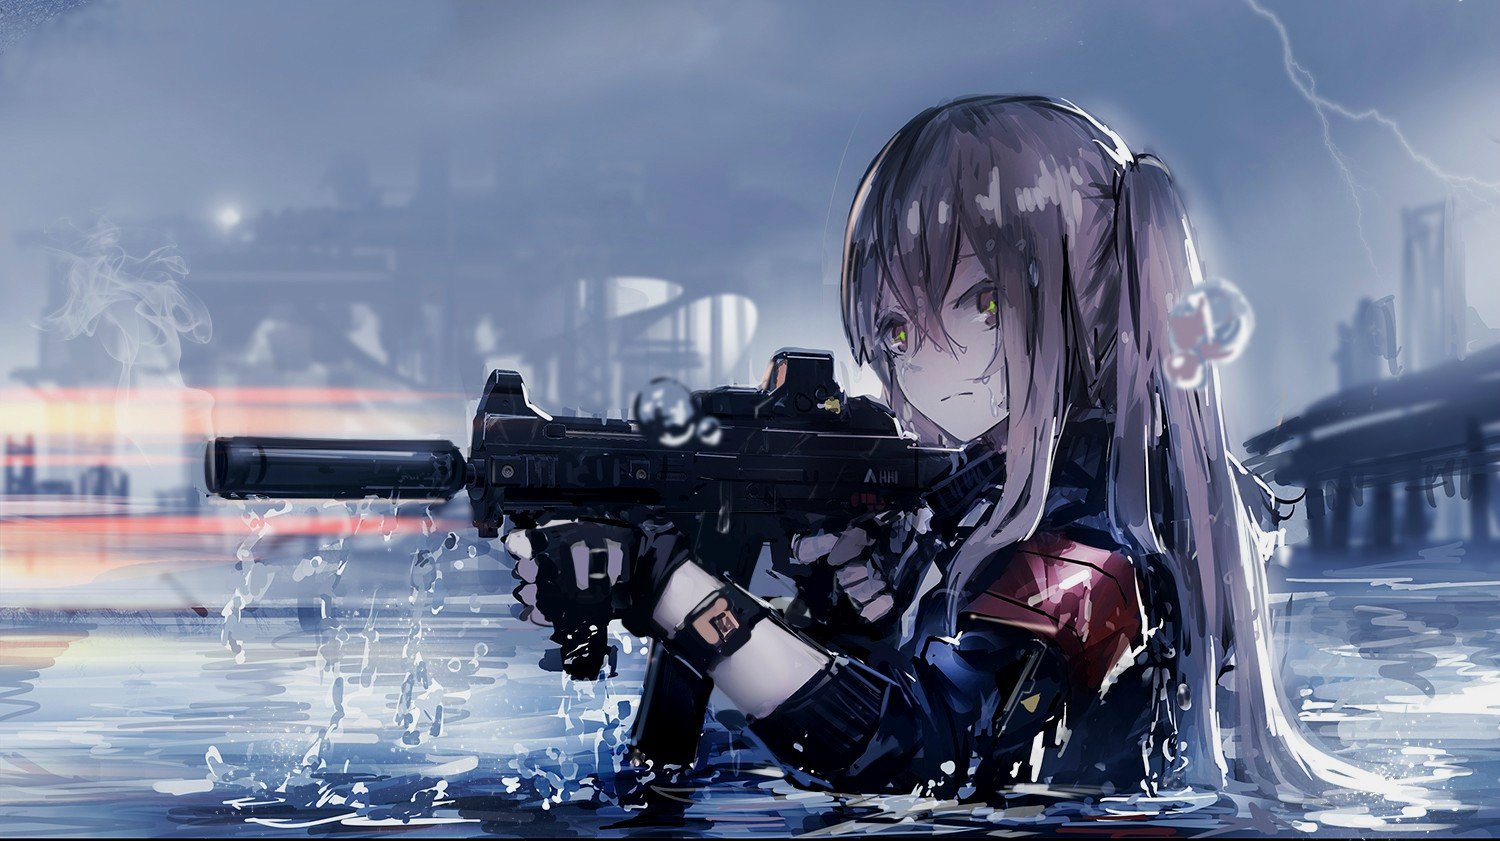  anime  girls  Assault rifle Gun  Wallpapers  HD Desktop 